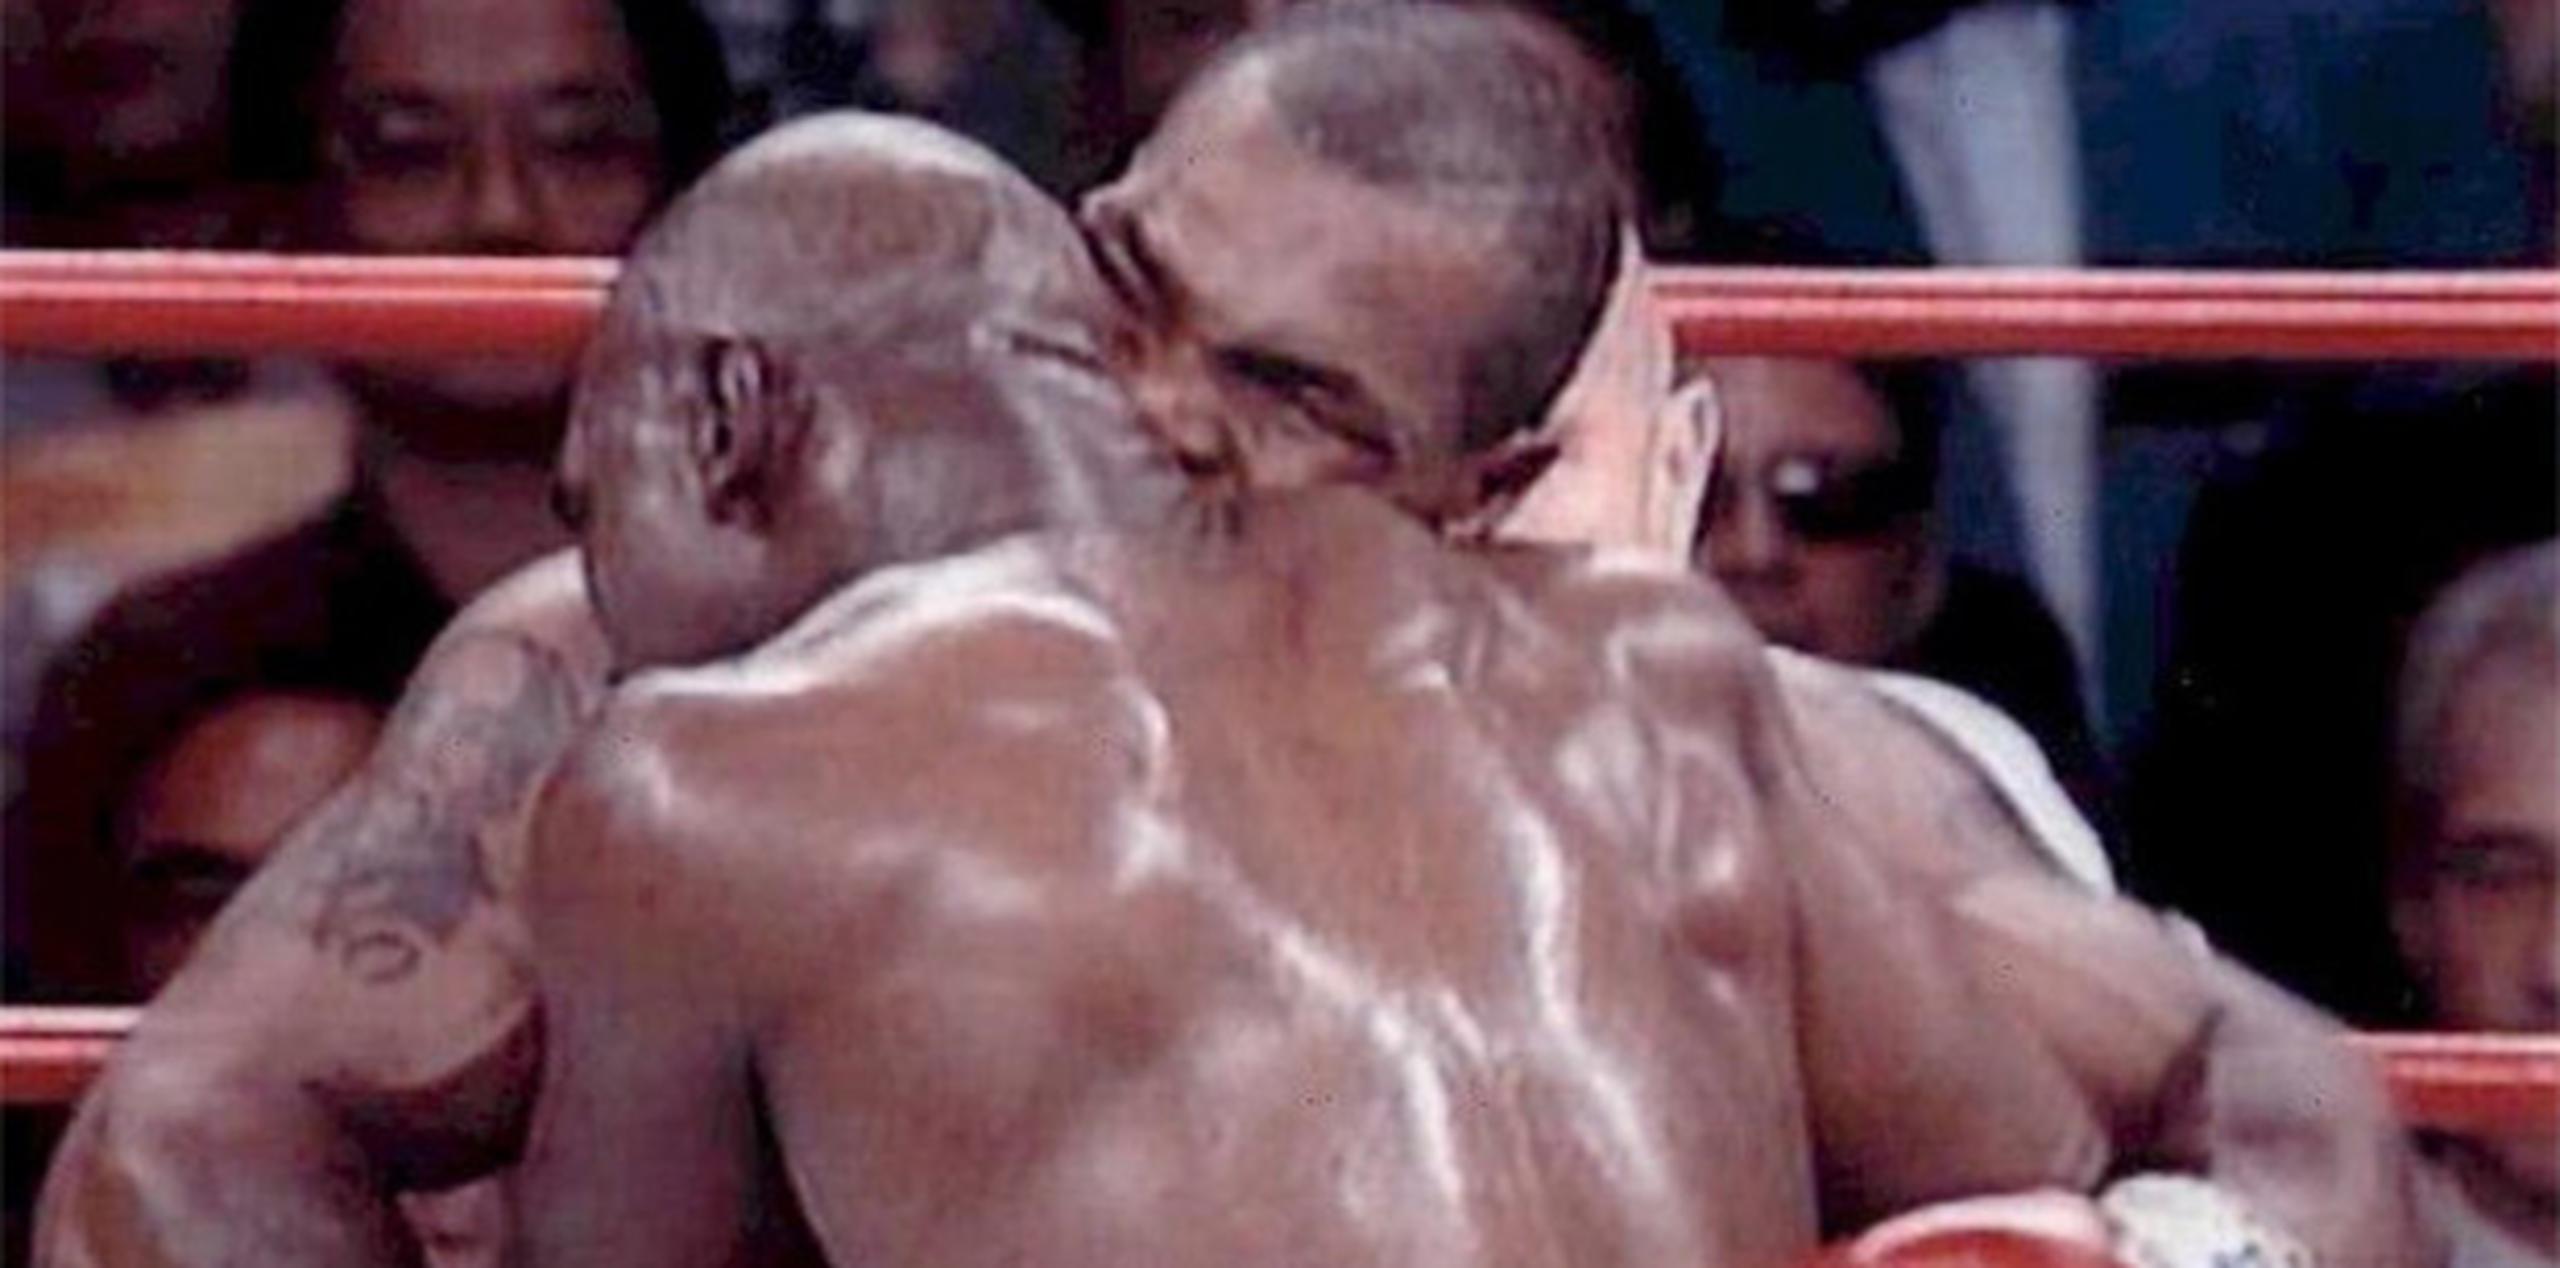 En junio de 1997, en Las Vegas (Nevada, EE.UU.), el estadounidense Evander Holyfield, ganó el título de campeón del peso pesado, pero perdió parte del lóbulo superior de la oreja derecha, que le arrancó en el tercer asalto el aspirante, Mike Tyson.